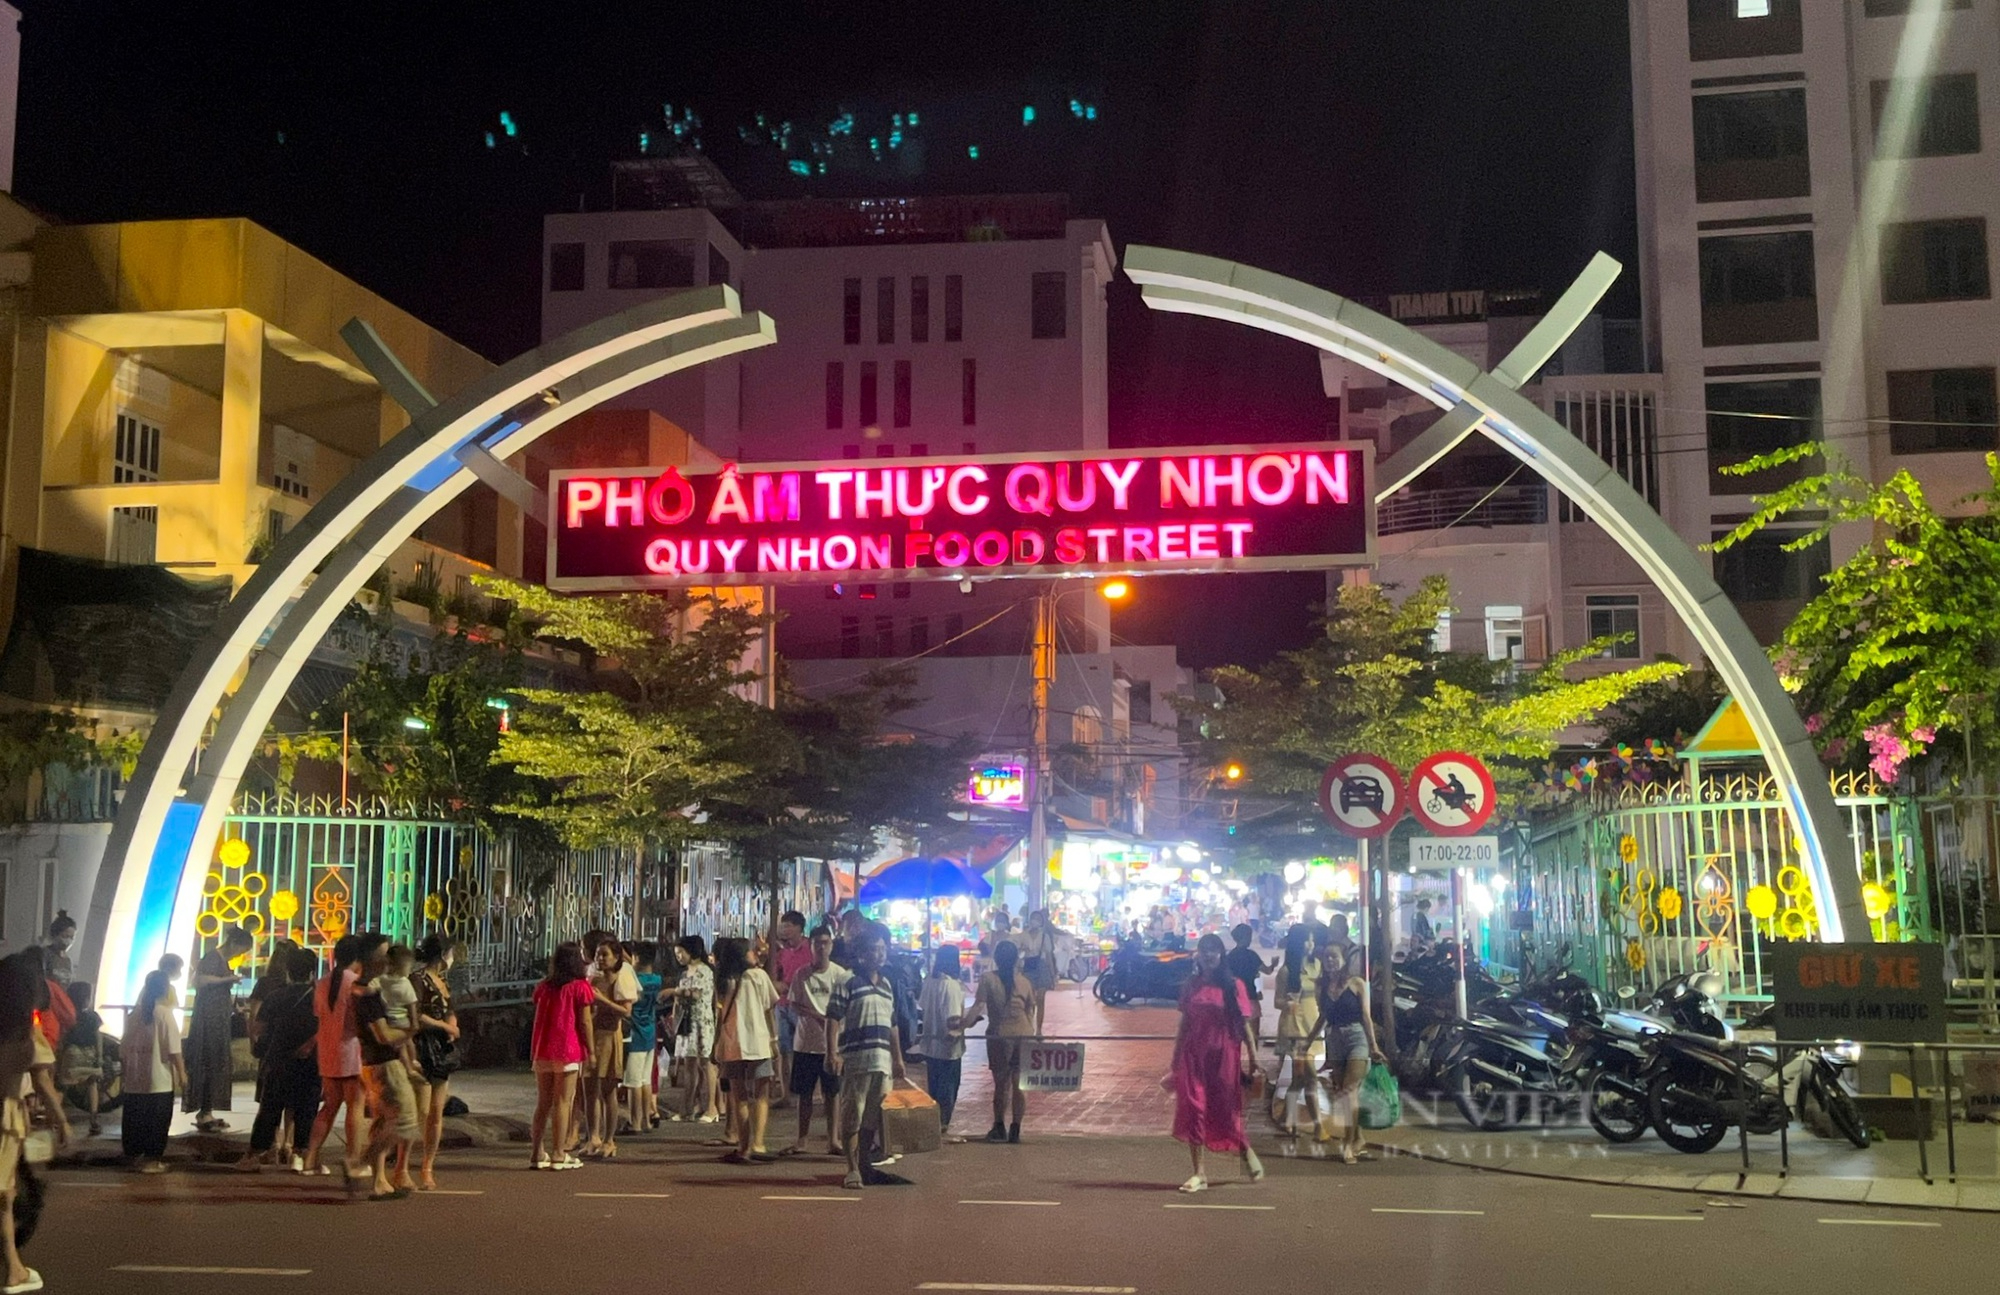 Món ăn đêm nổi tiếng ở Quy Nhơn với hàng trăm món ăn và đồ uống hấp dẫn khách du lịch